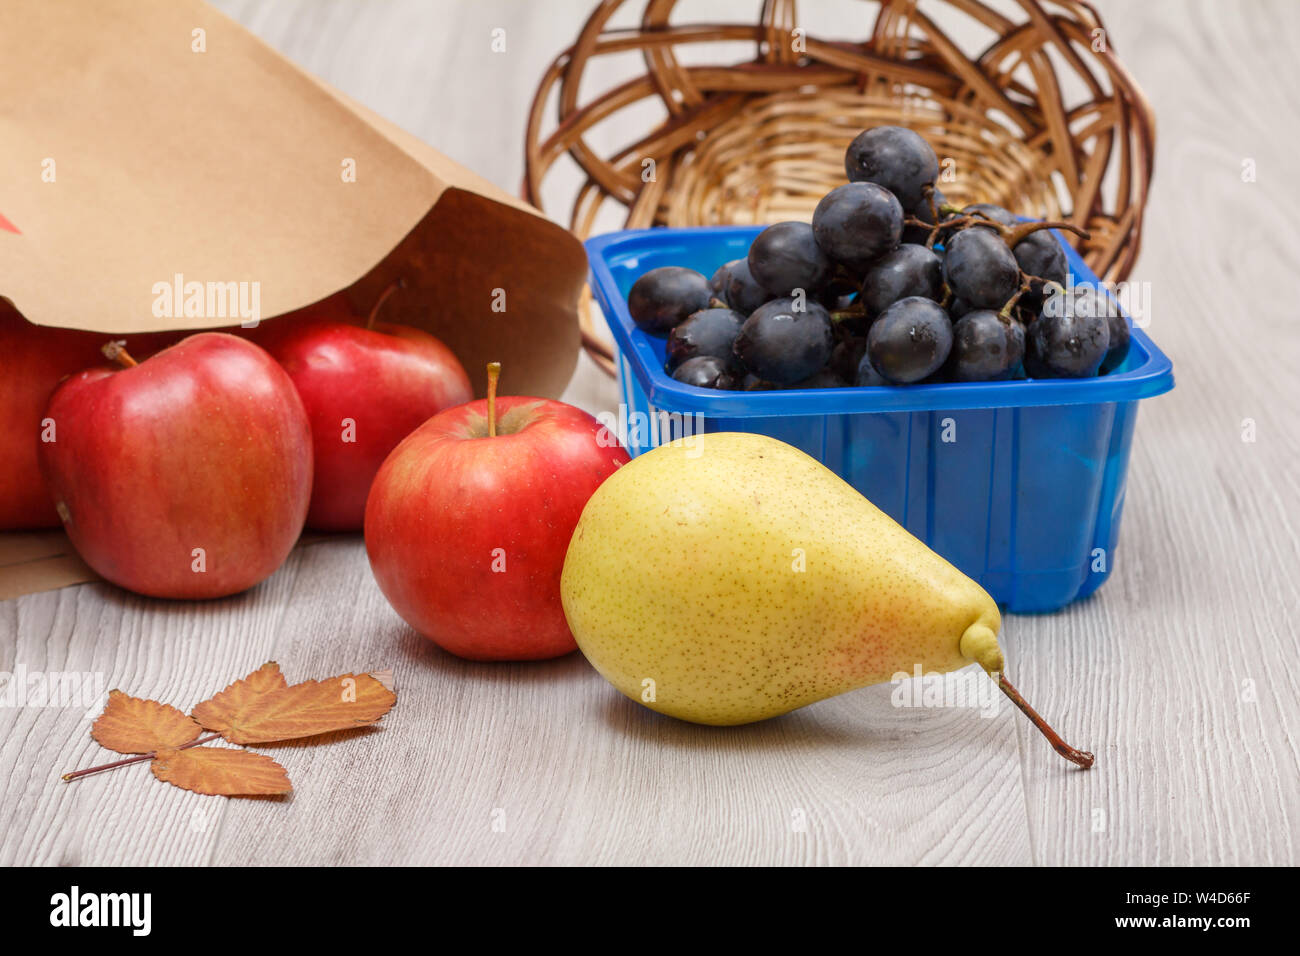 Giallo maturo pera, grappolo di uva in una scatola, un cesto di vimini, mele rosse con il sacchetto di carta e foglia secca sulla scrivania in legno. Un sano cibo biologico. Foto Stock